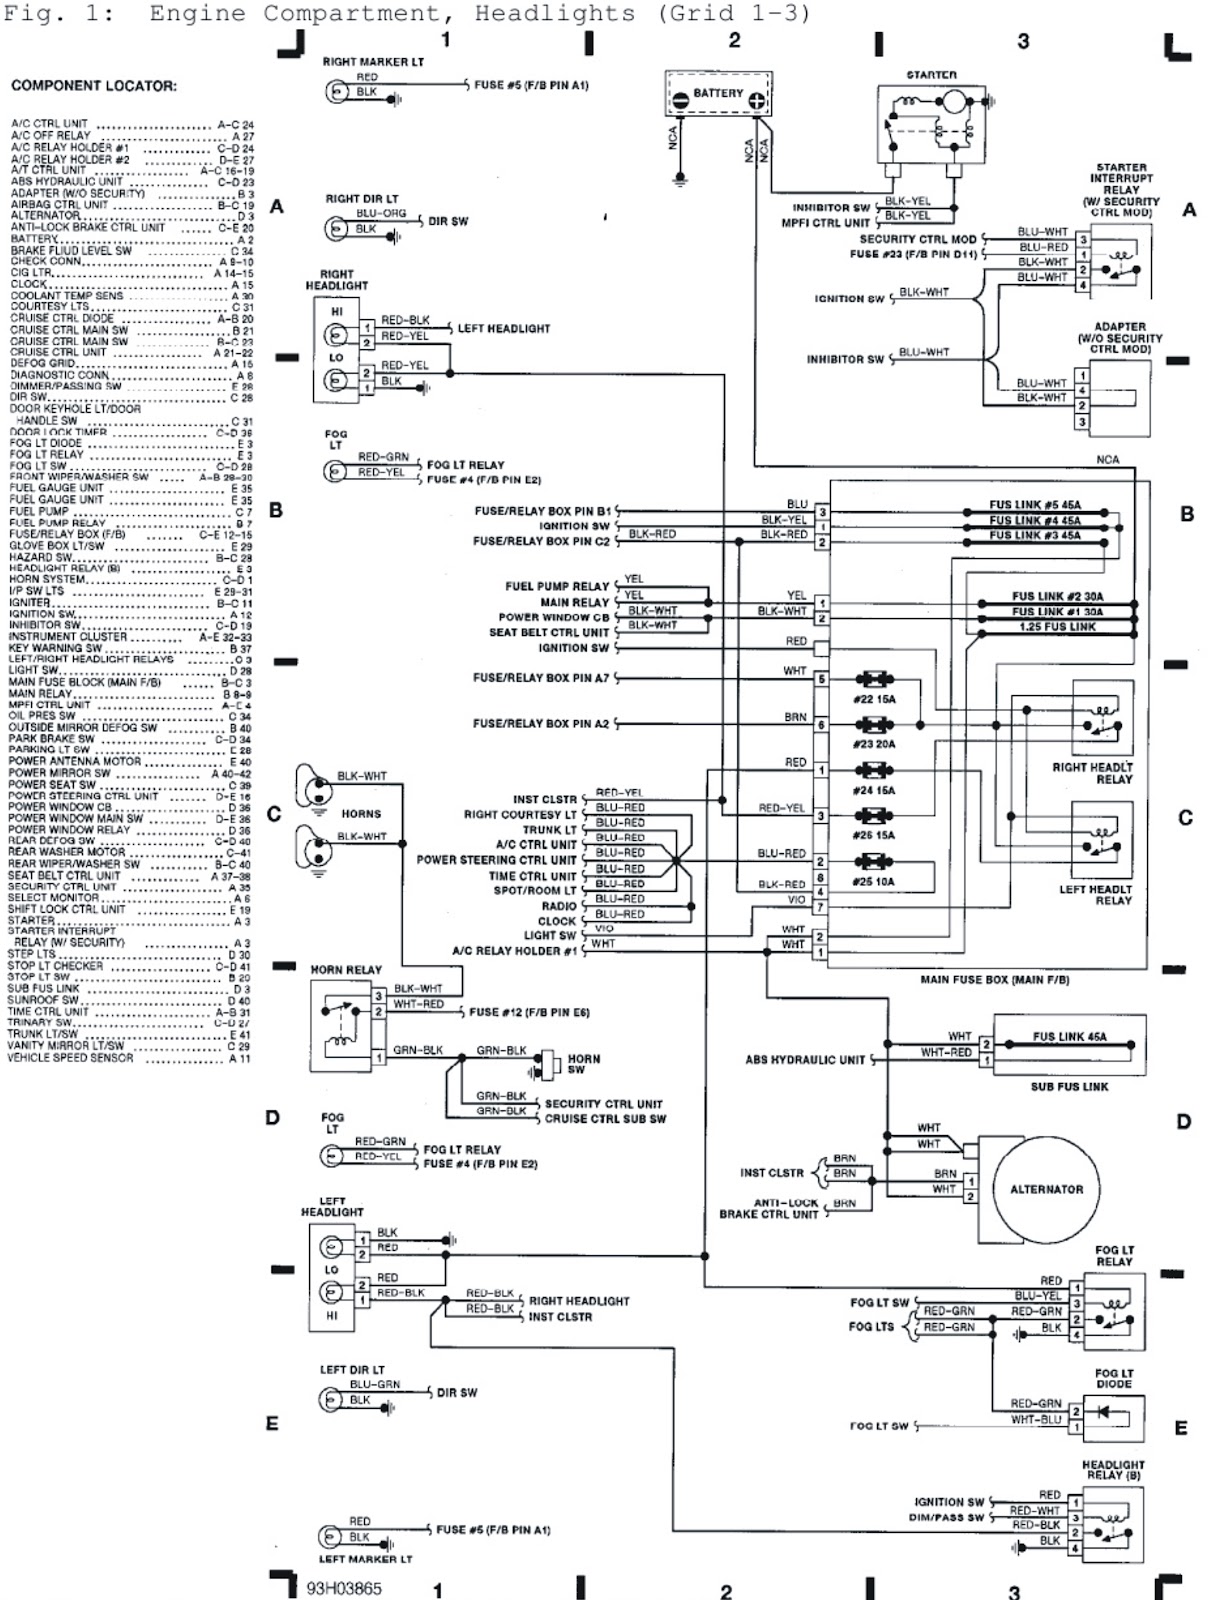 Subaru Engine Compartment Wiring Diagram 1995